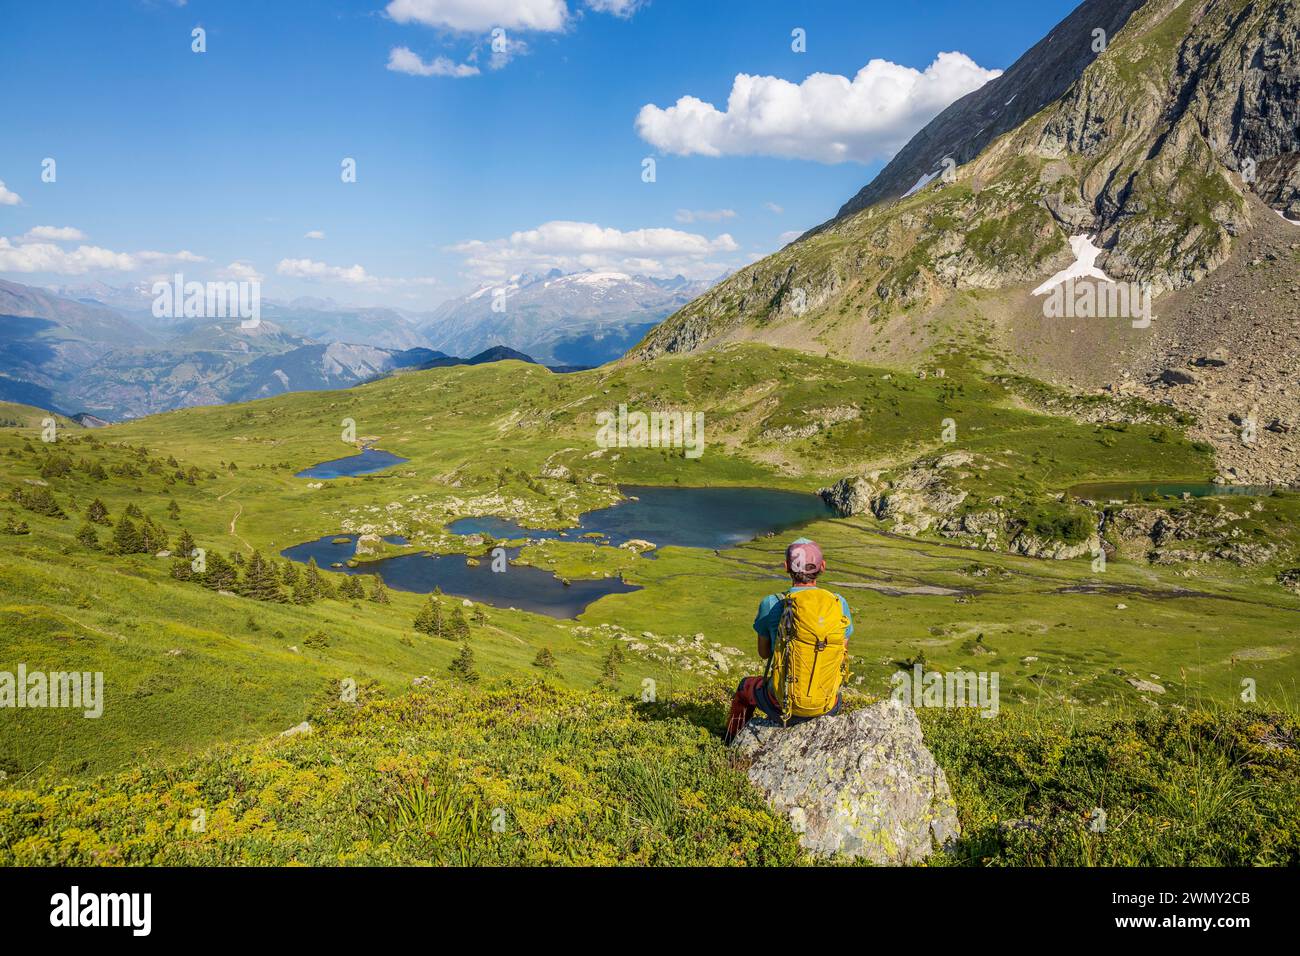 Francia, Isère, Matheysine, massiccio di Taillefer, escursione al Plateau des Lacs (2068 m) con il sentiero GR 50, lac Noir (2039 m), lac de l'Agneau e lac de la Veche, il massiccio del Meije sullo sfondo Foto Stock